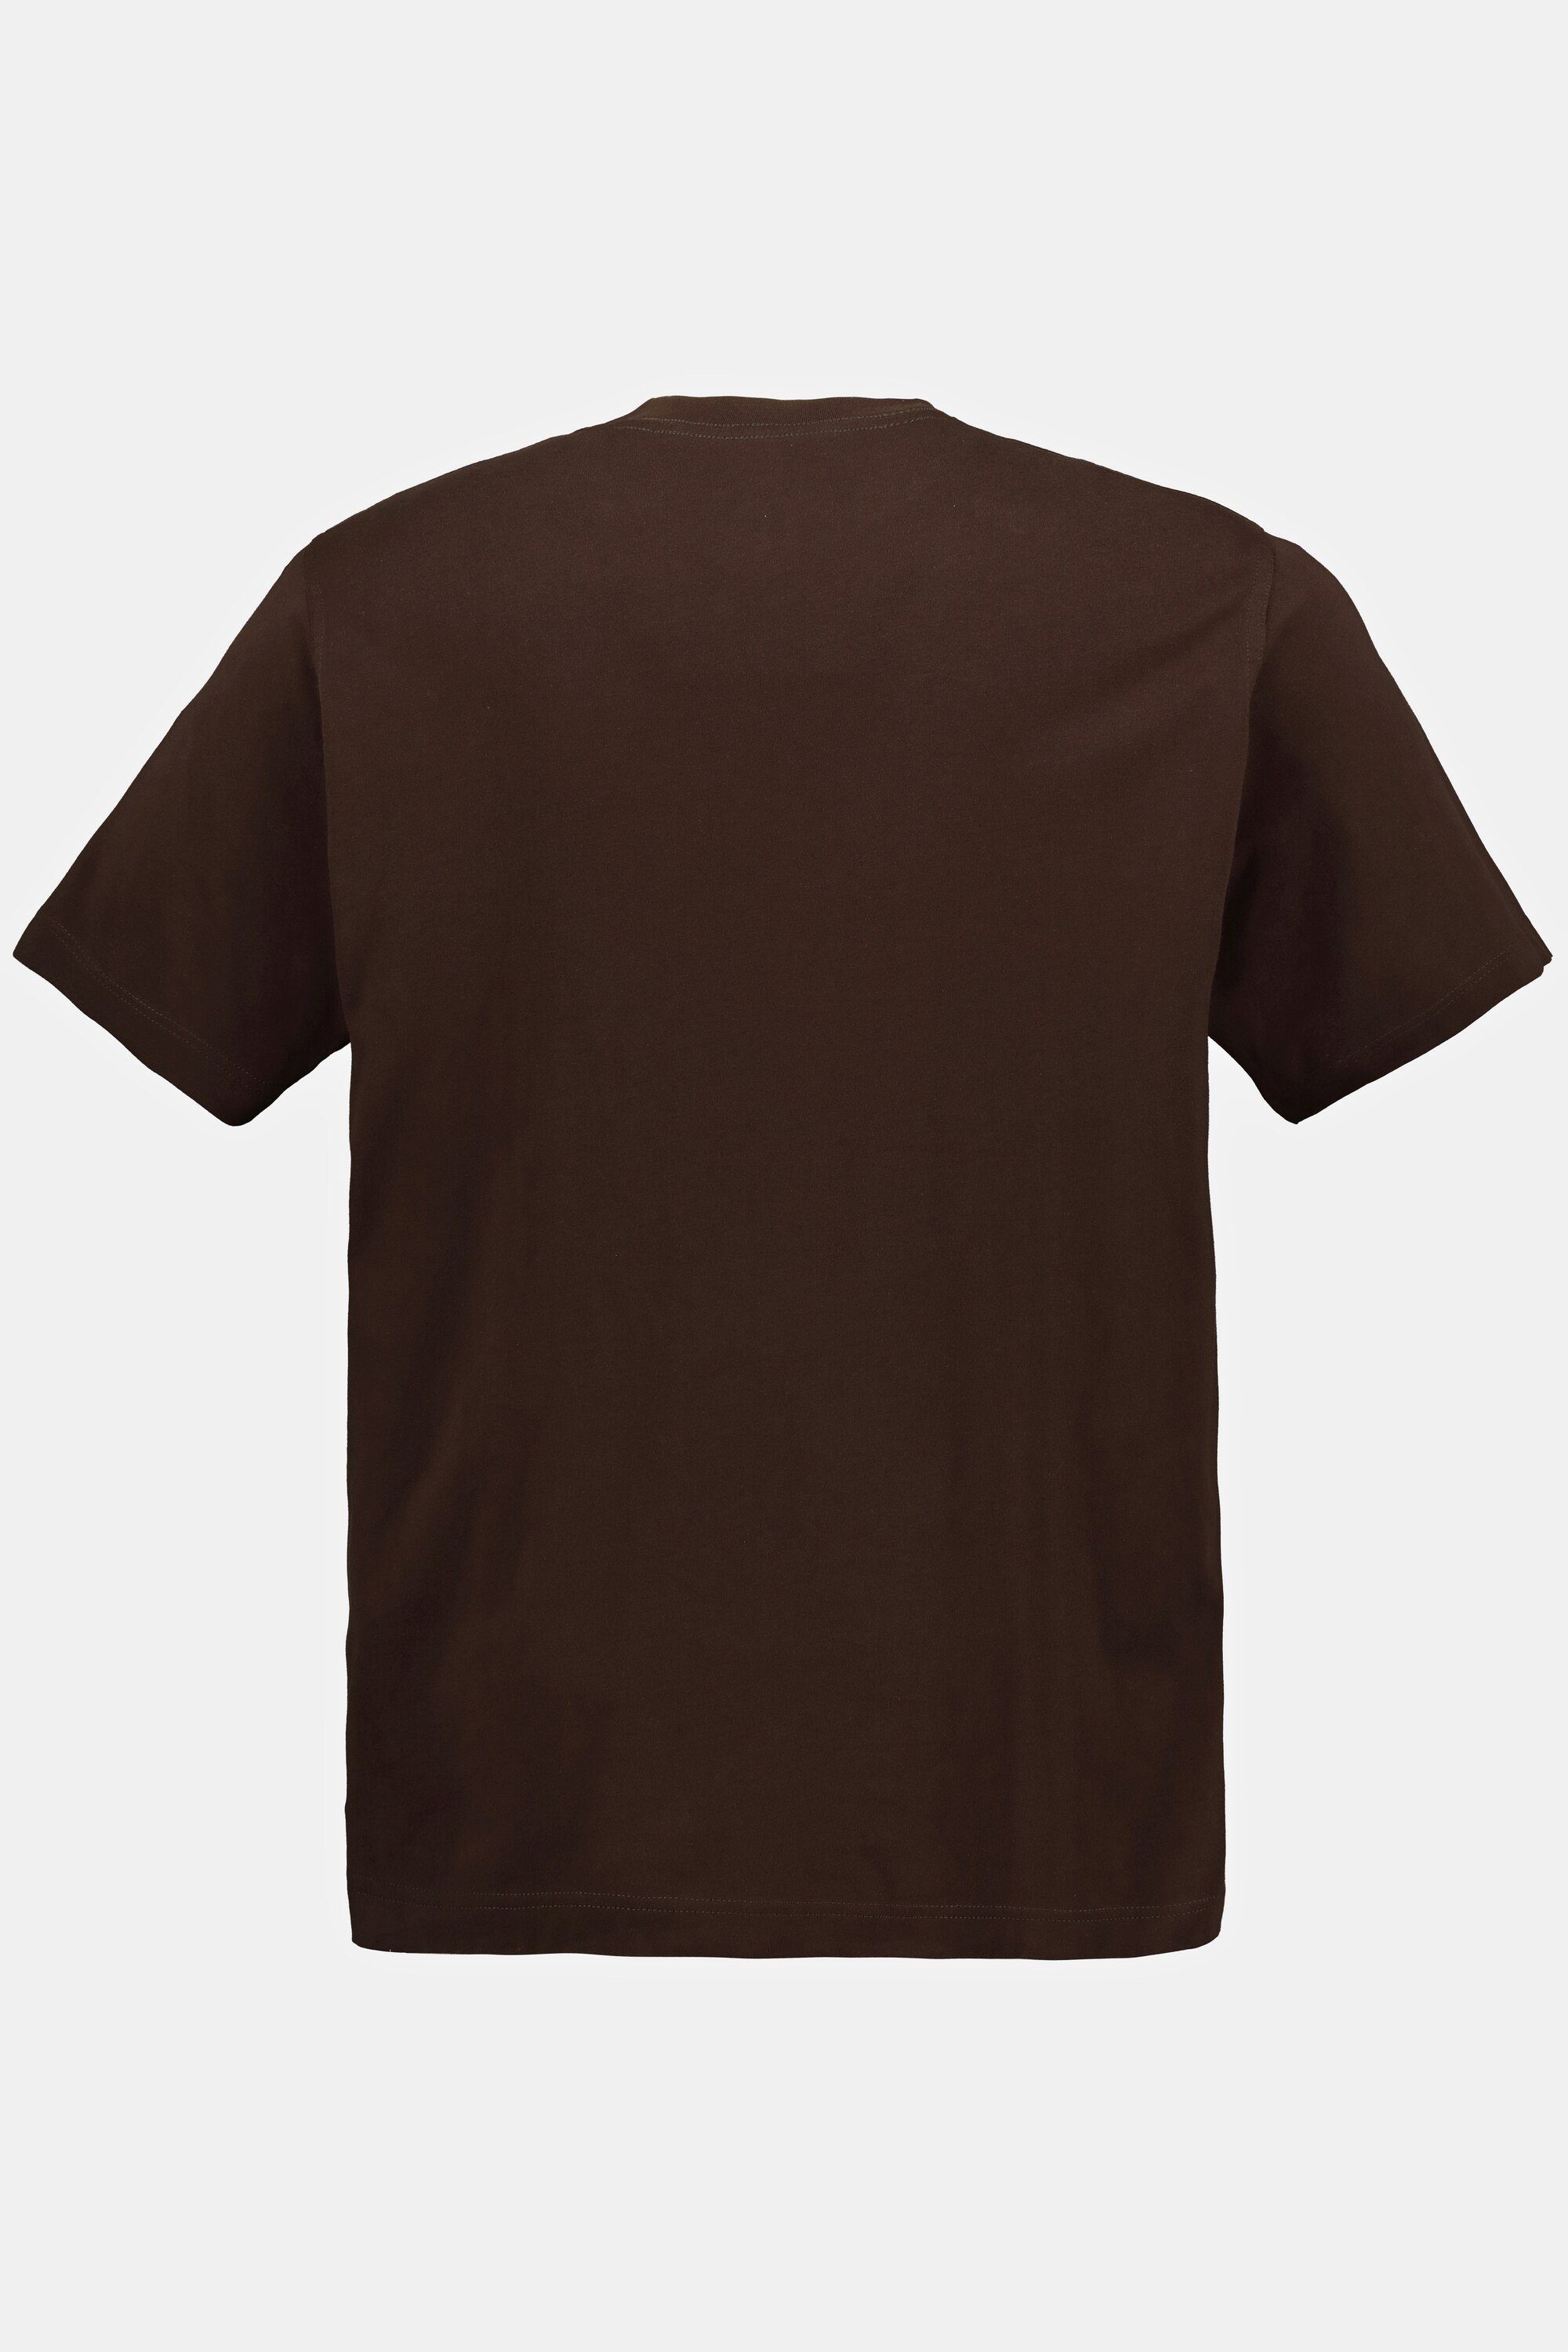 JP1880 T-Shirt T-Shirt Basic Rundhals mahagonibraun bis Baumwolle 8XL gekämmte